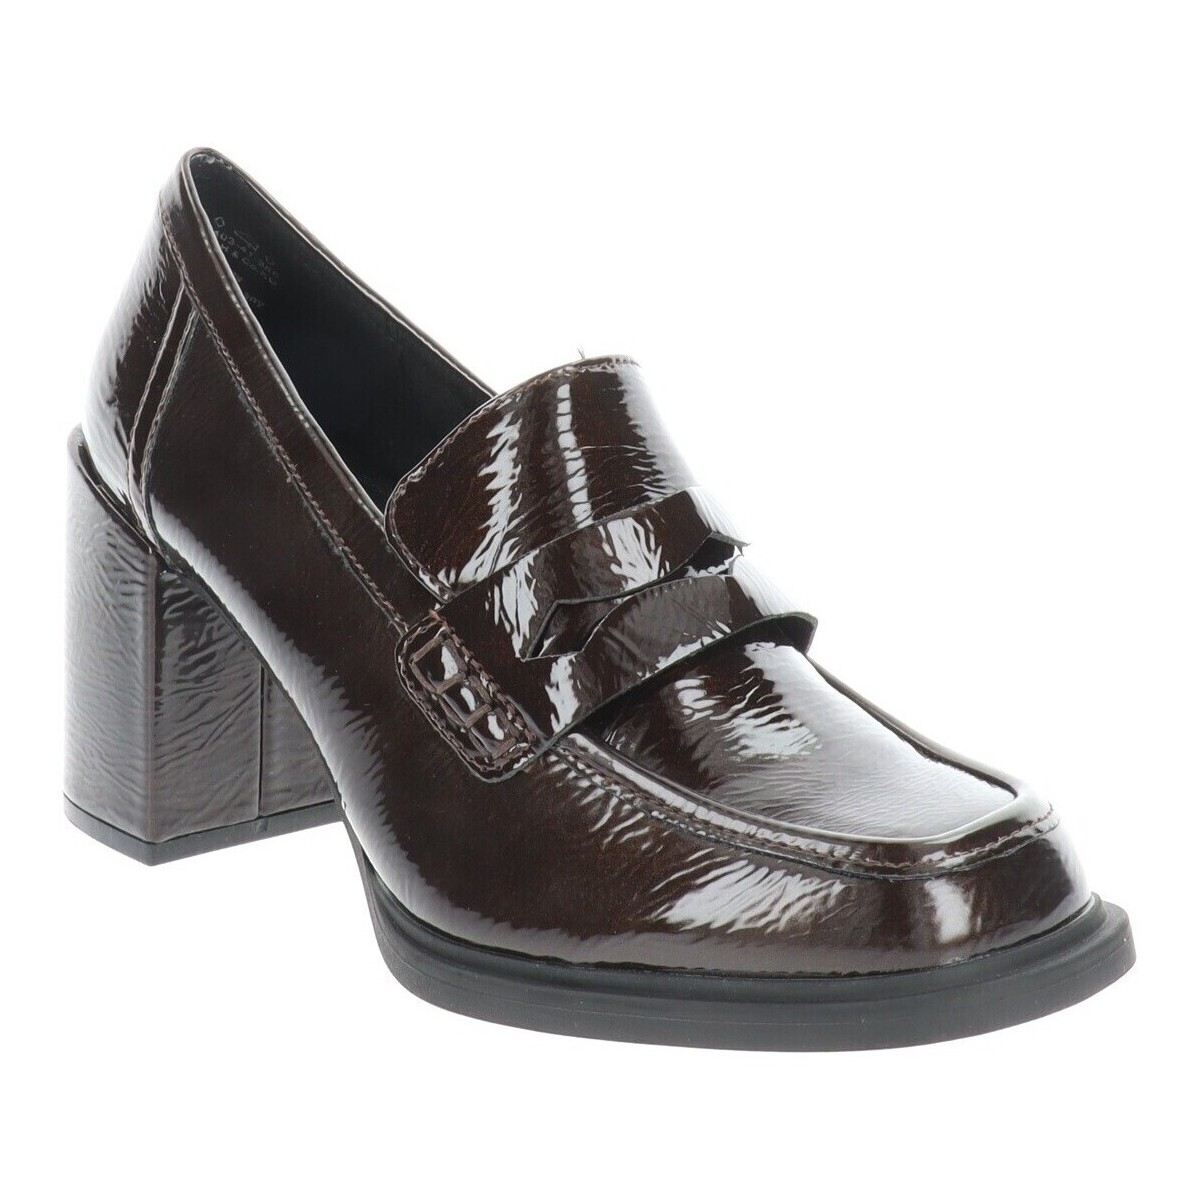 Chaussures Femme Escarpins Marco Tozzi 2-24403-41 Marron